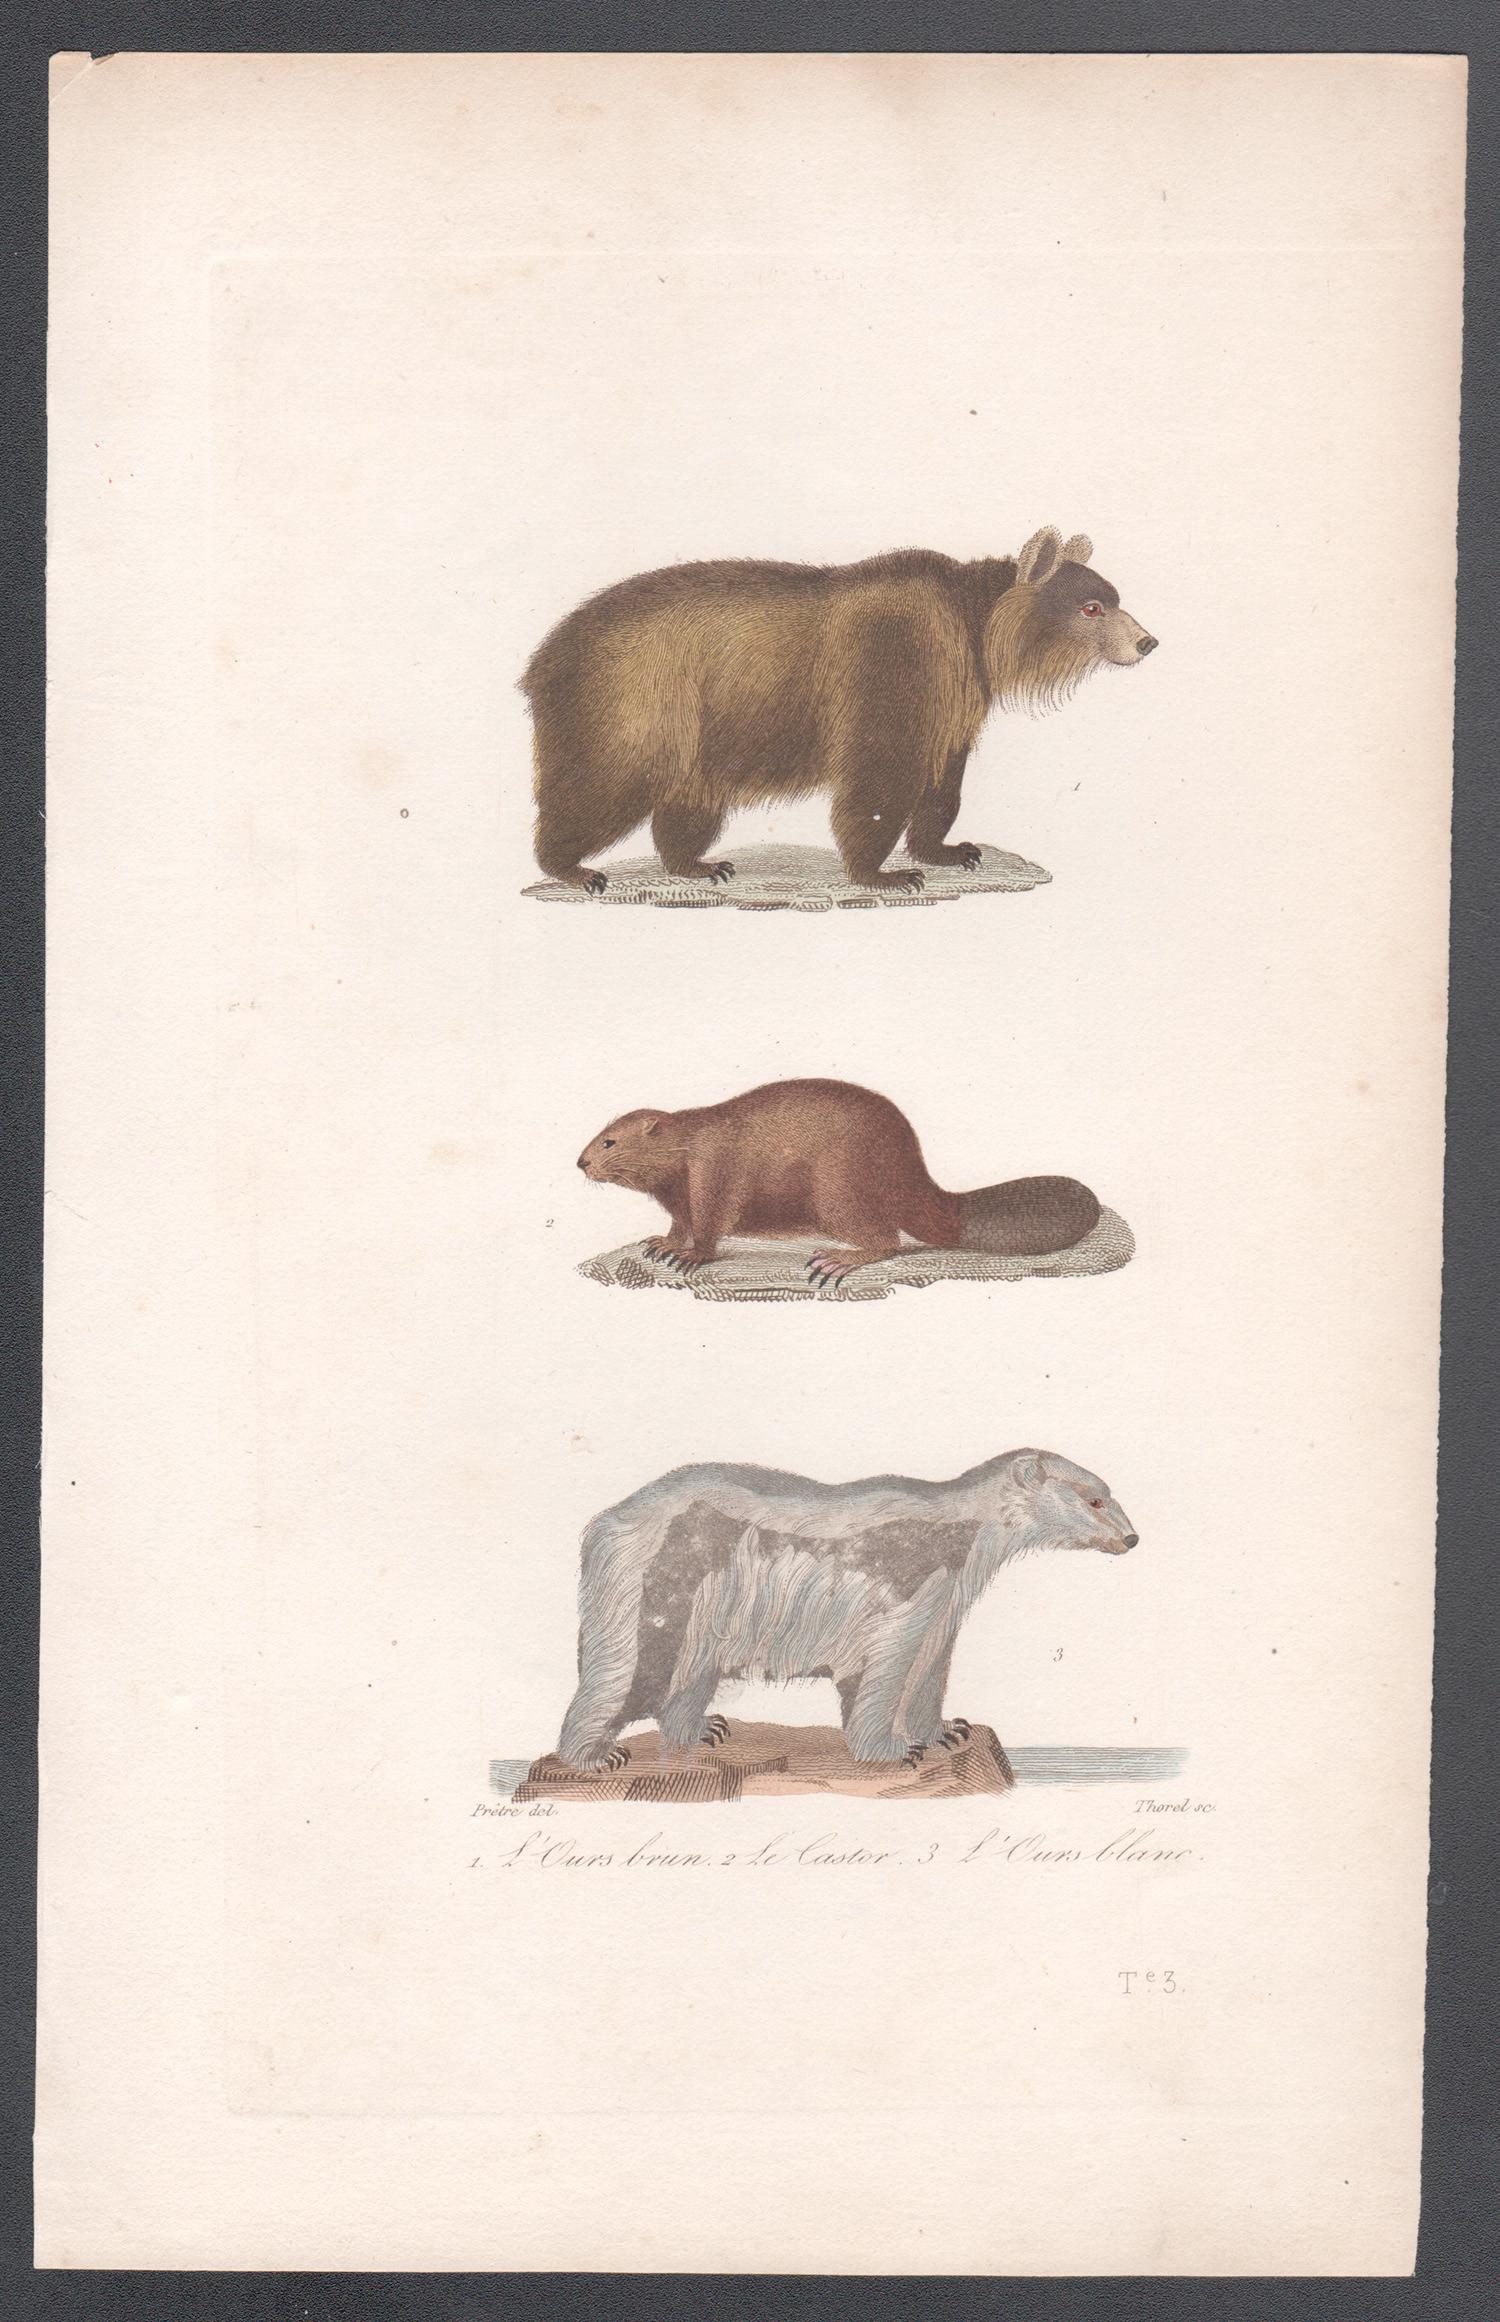 Ours brun, castor, ours polaire, gravure animalière du milieu du 19e siècle français - Print de Unknown